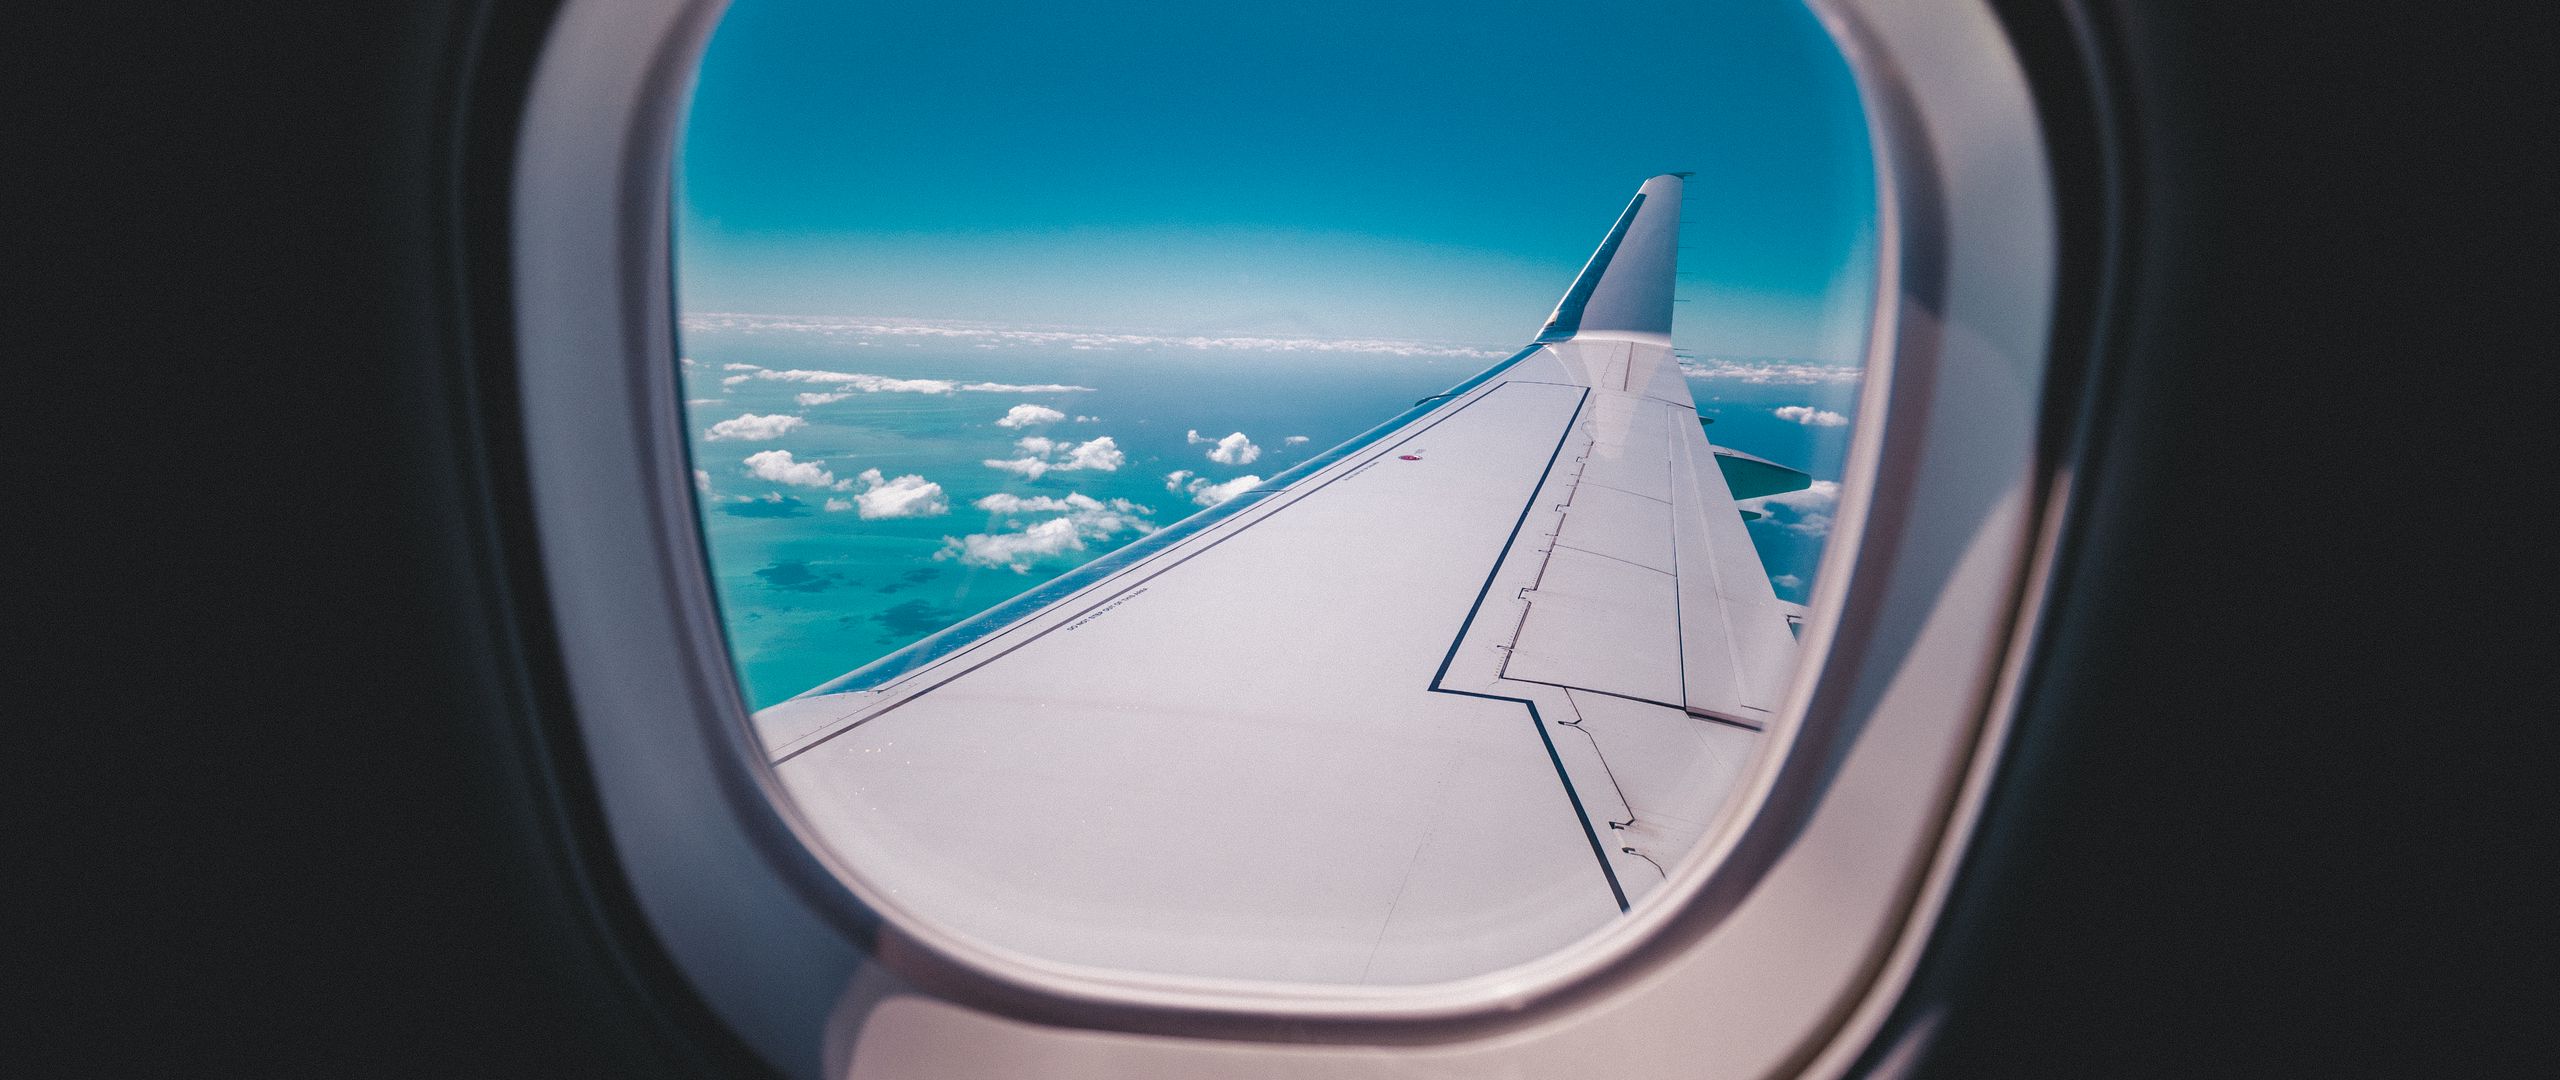 Шторки иллюминаторов. Вид из иллюминатора самолета на крыло. Иллюминатор самолета. Панорамный иллюминатор. Мальдивы в иллюминаторе.